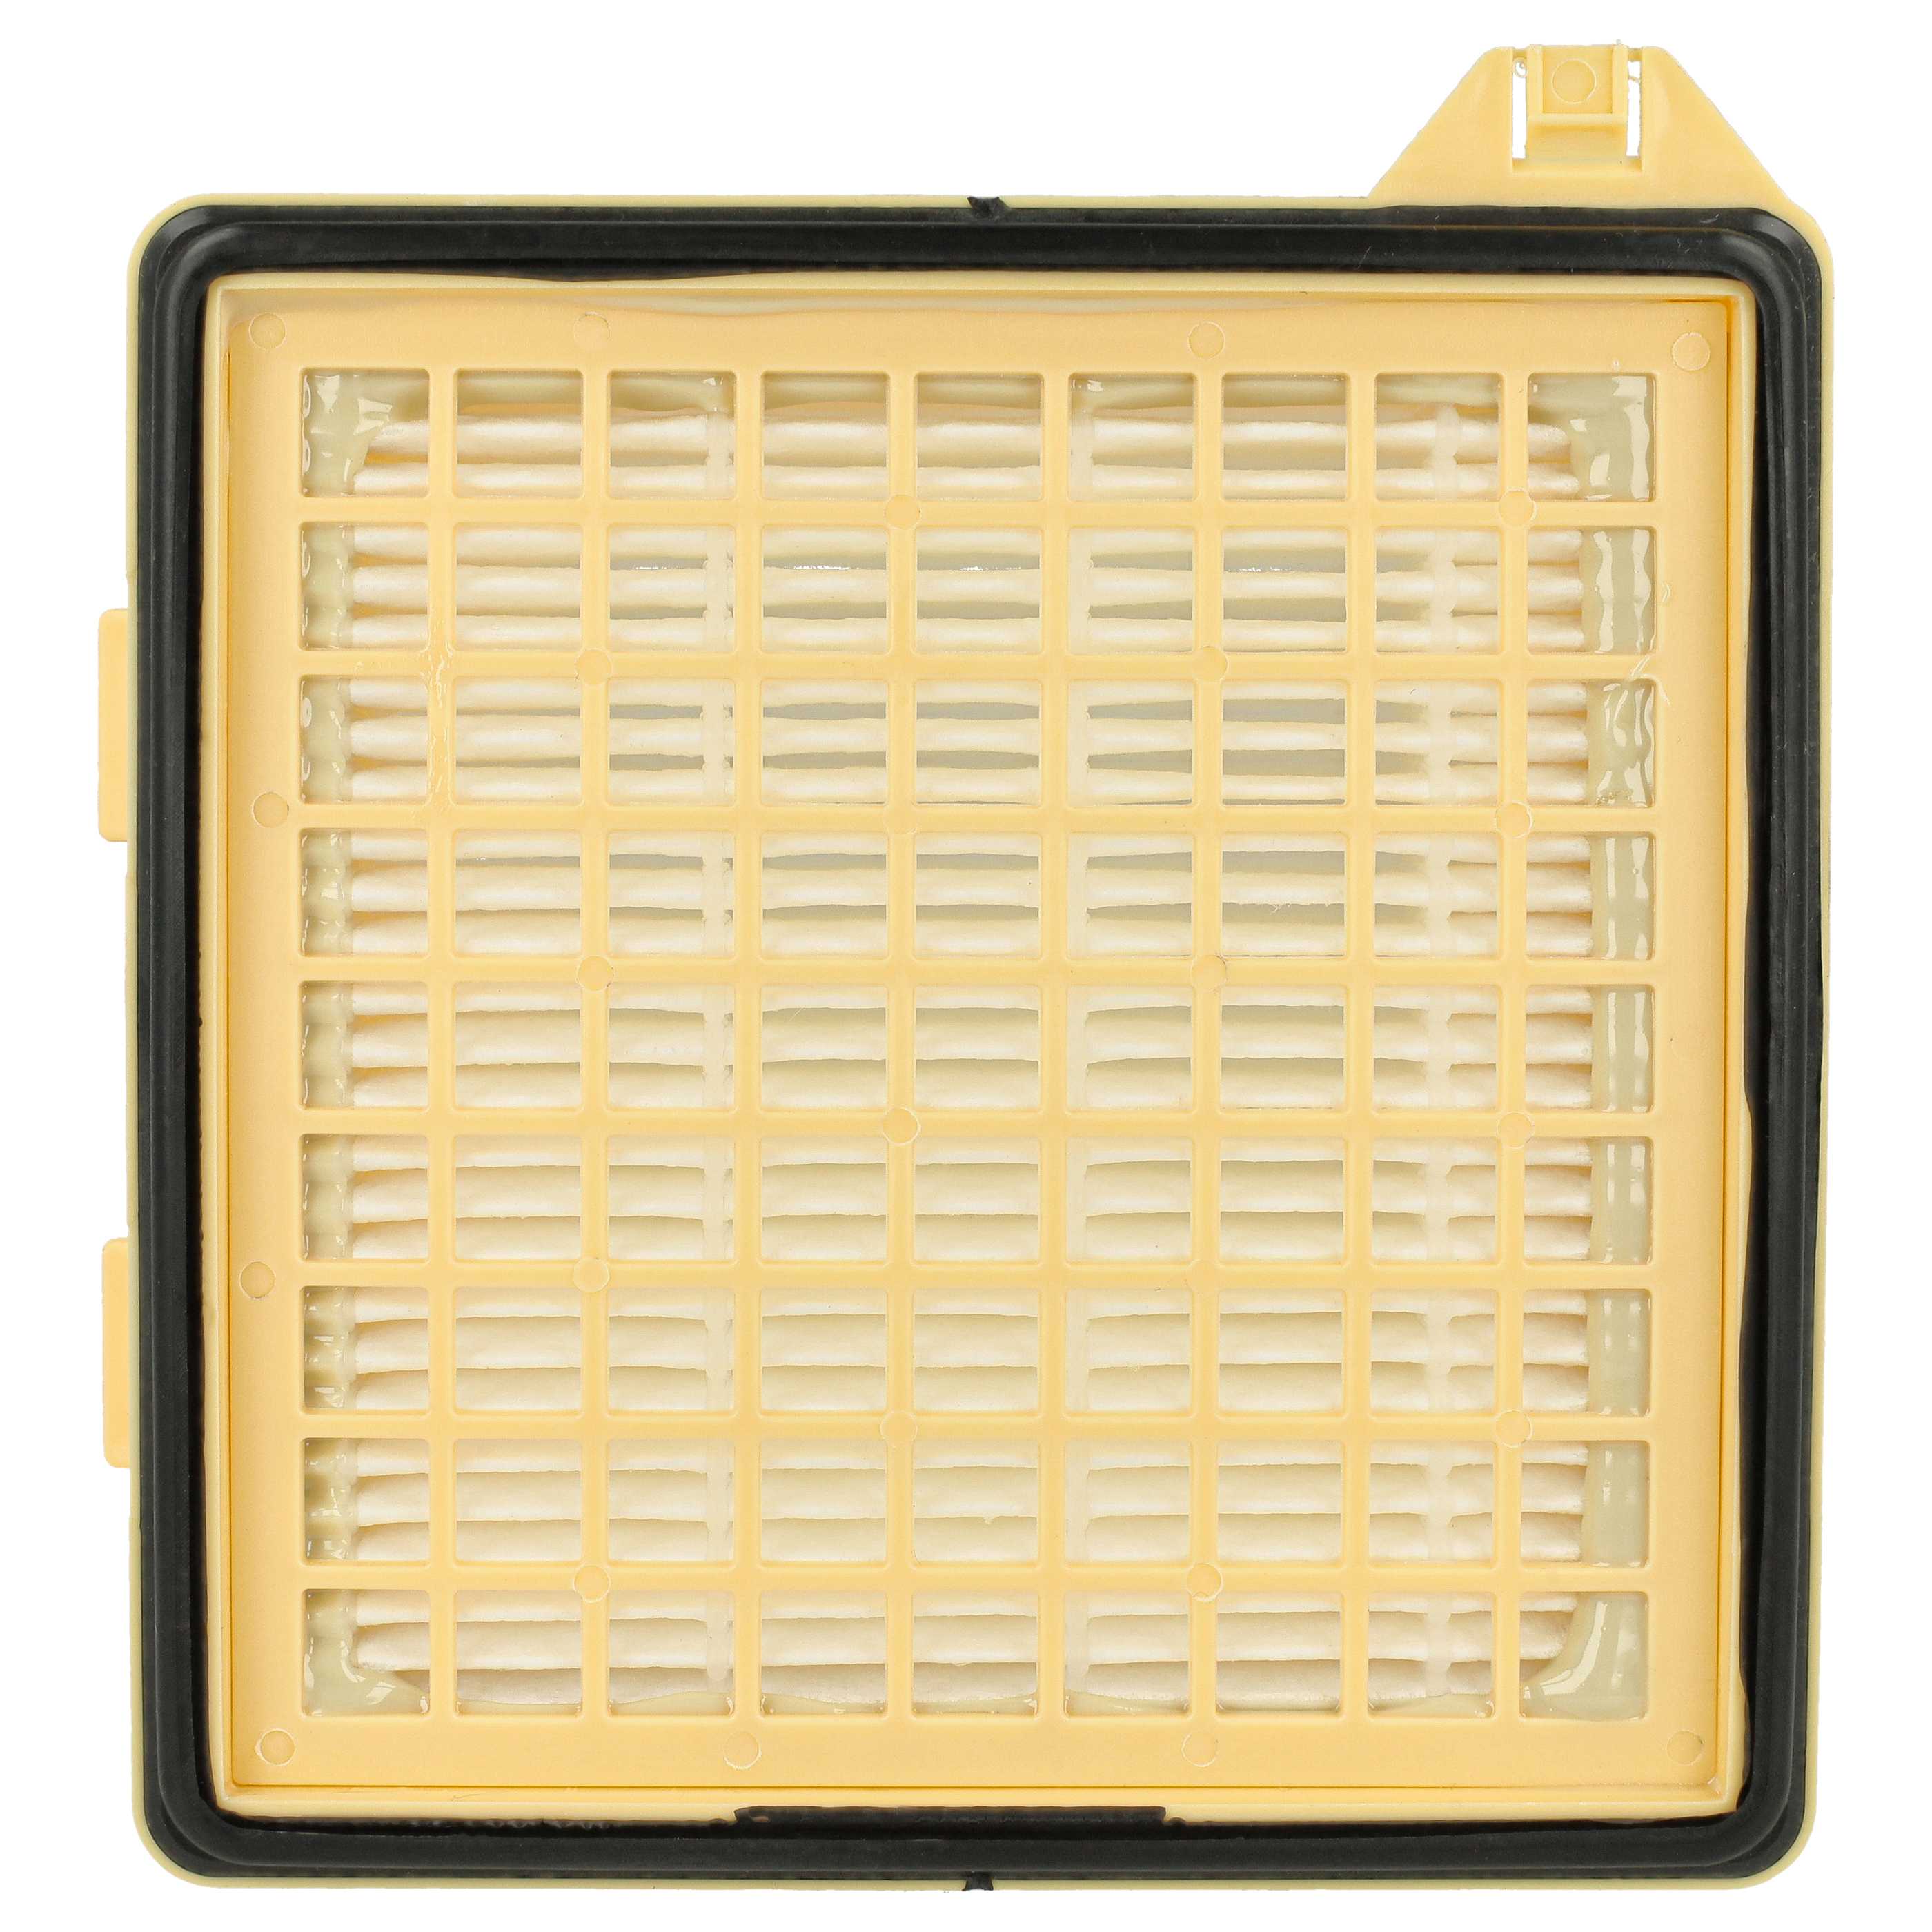 Filtro sostituisce Vorwerk VT260 per aspirapolvere - filtro HEPA, bianco / giallo